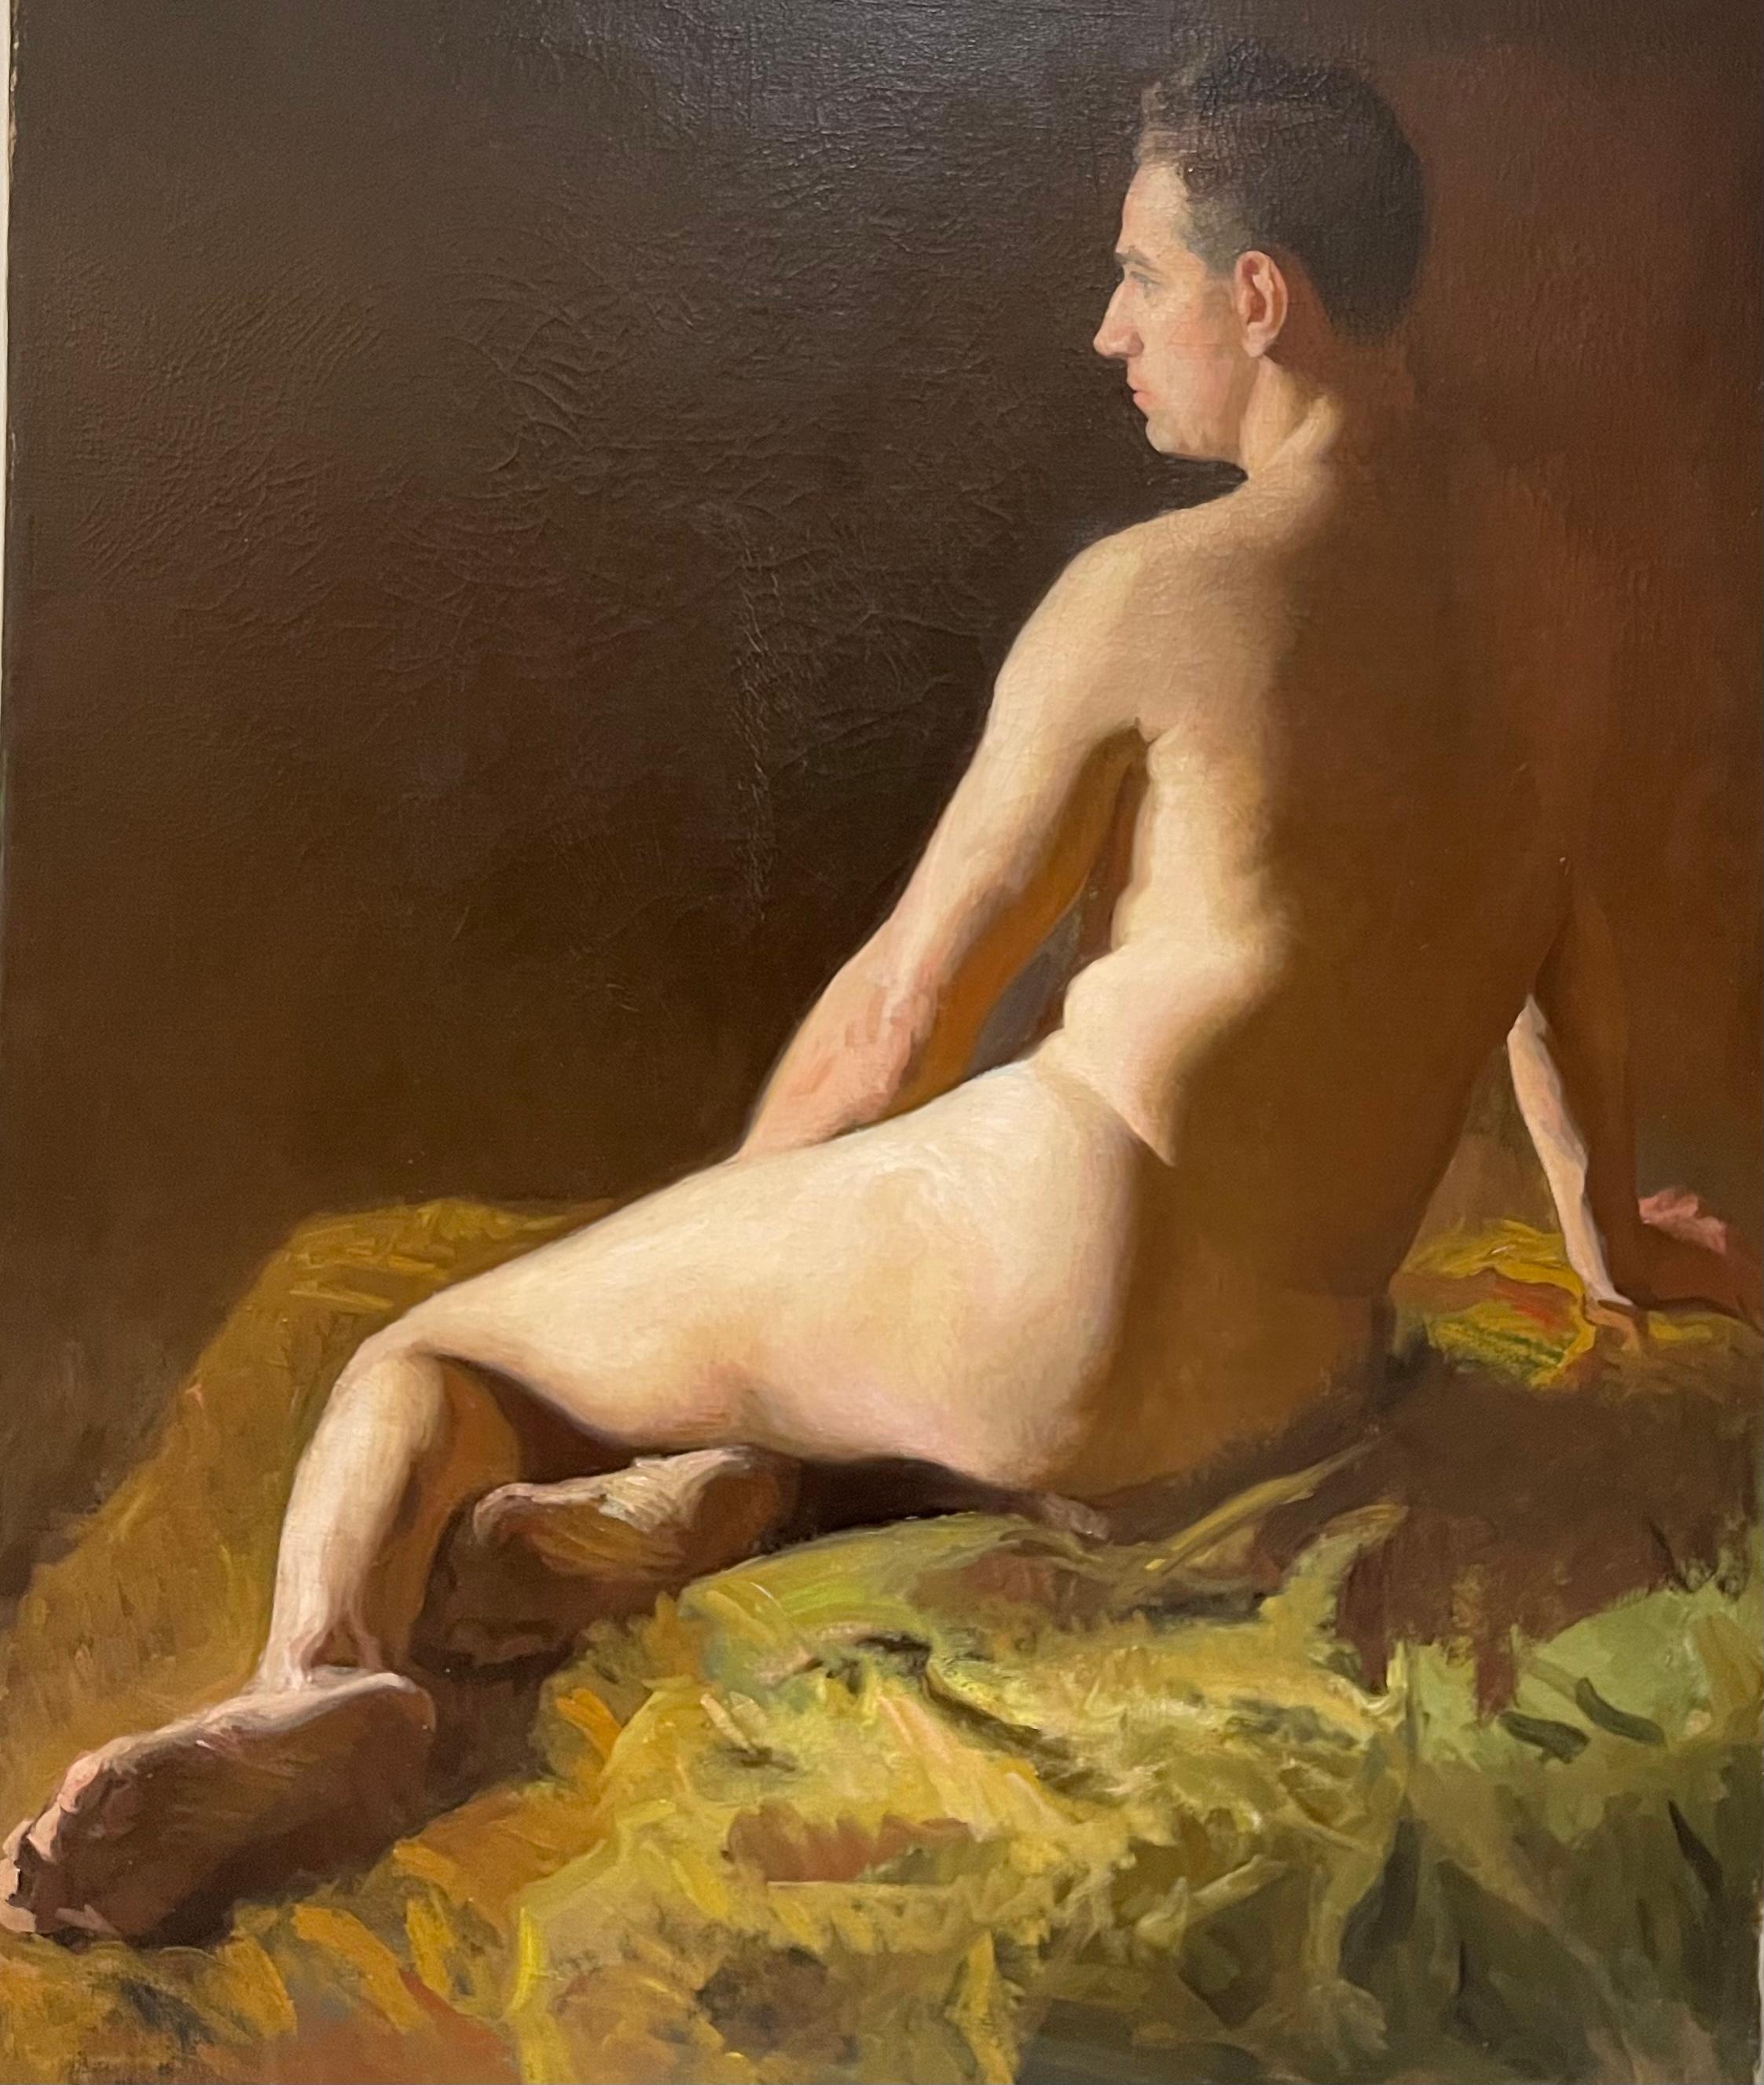 Nude Painting Unknown - Grand nu masculin américain ancien et académique allongé avec tiroirs